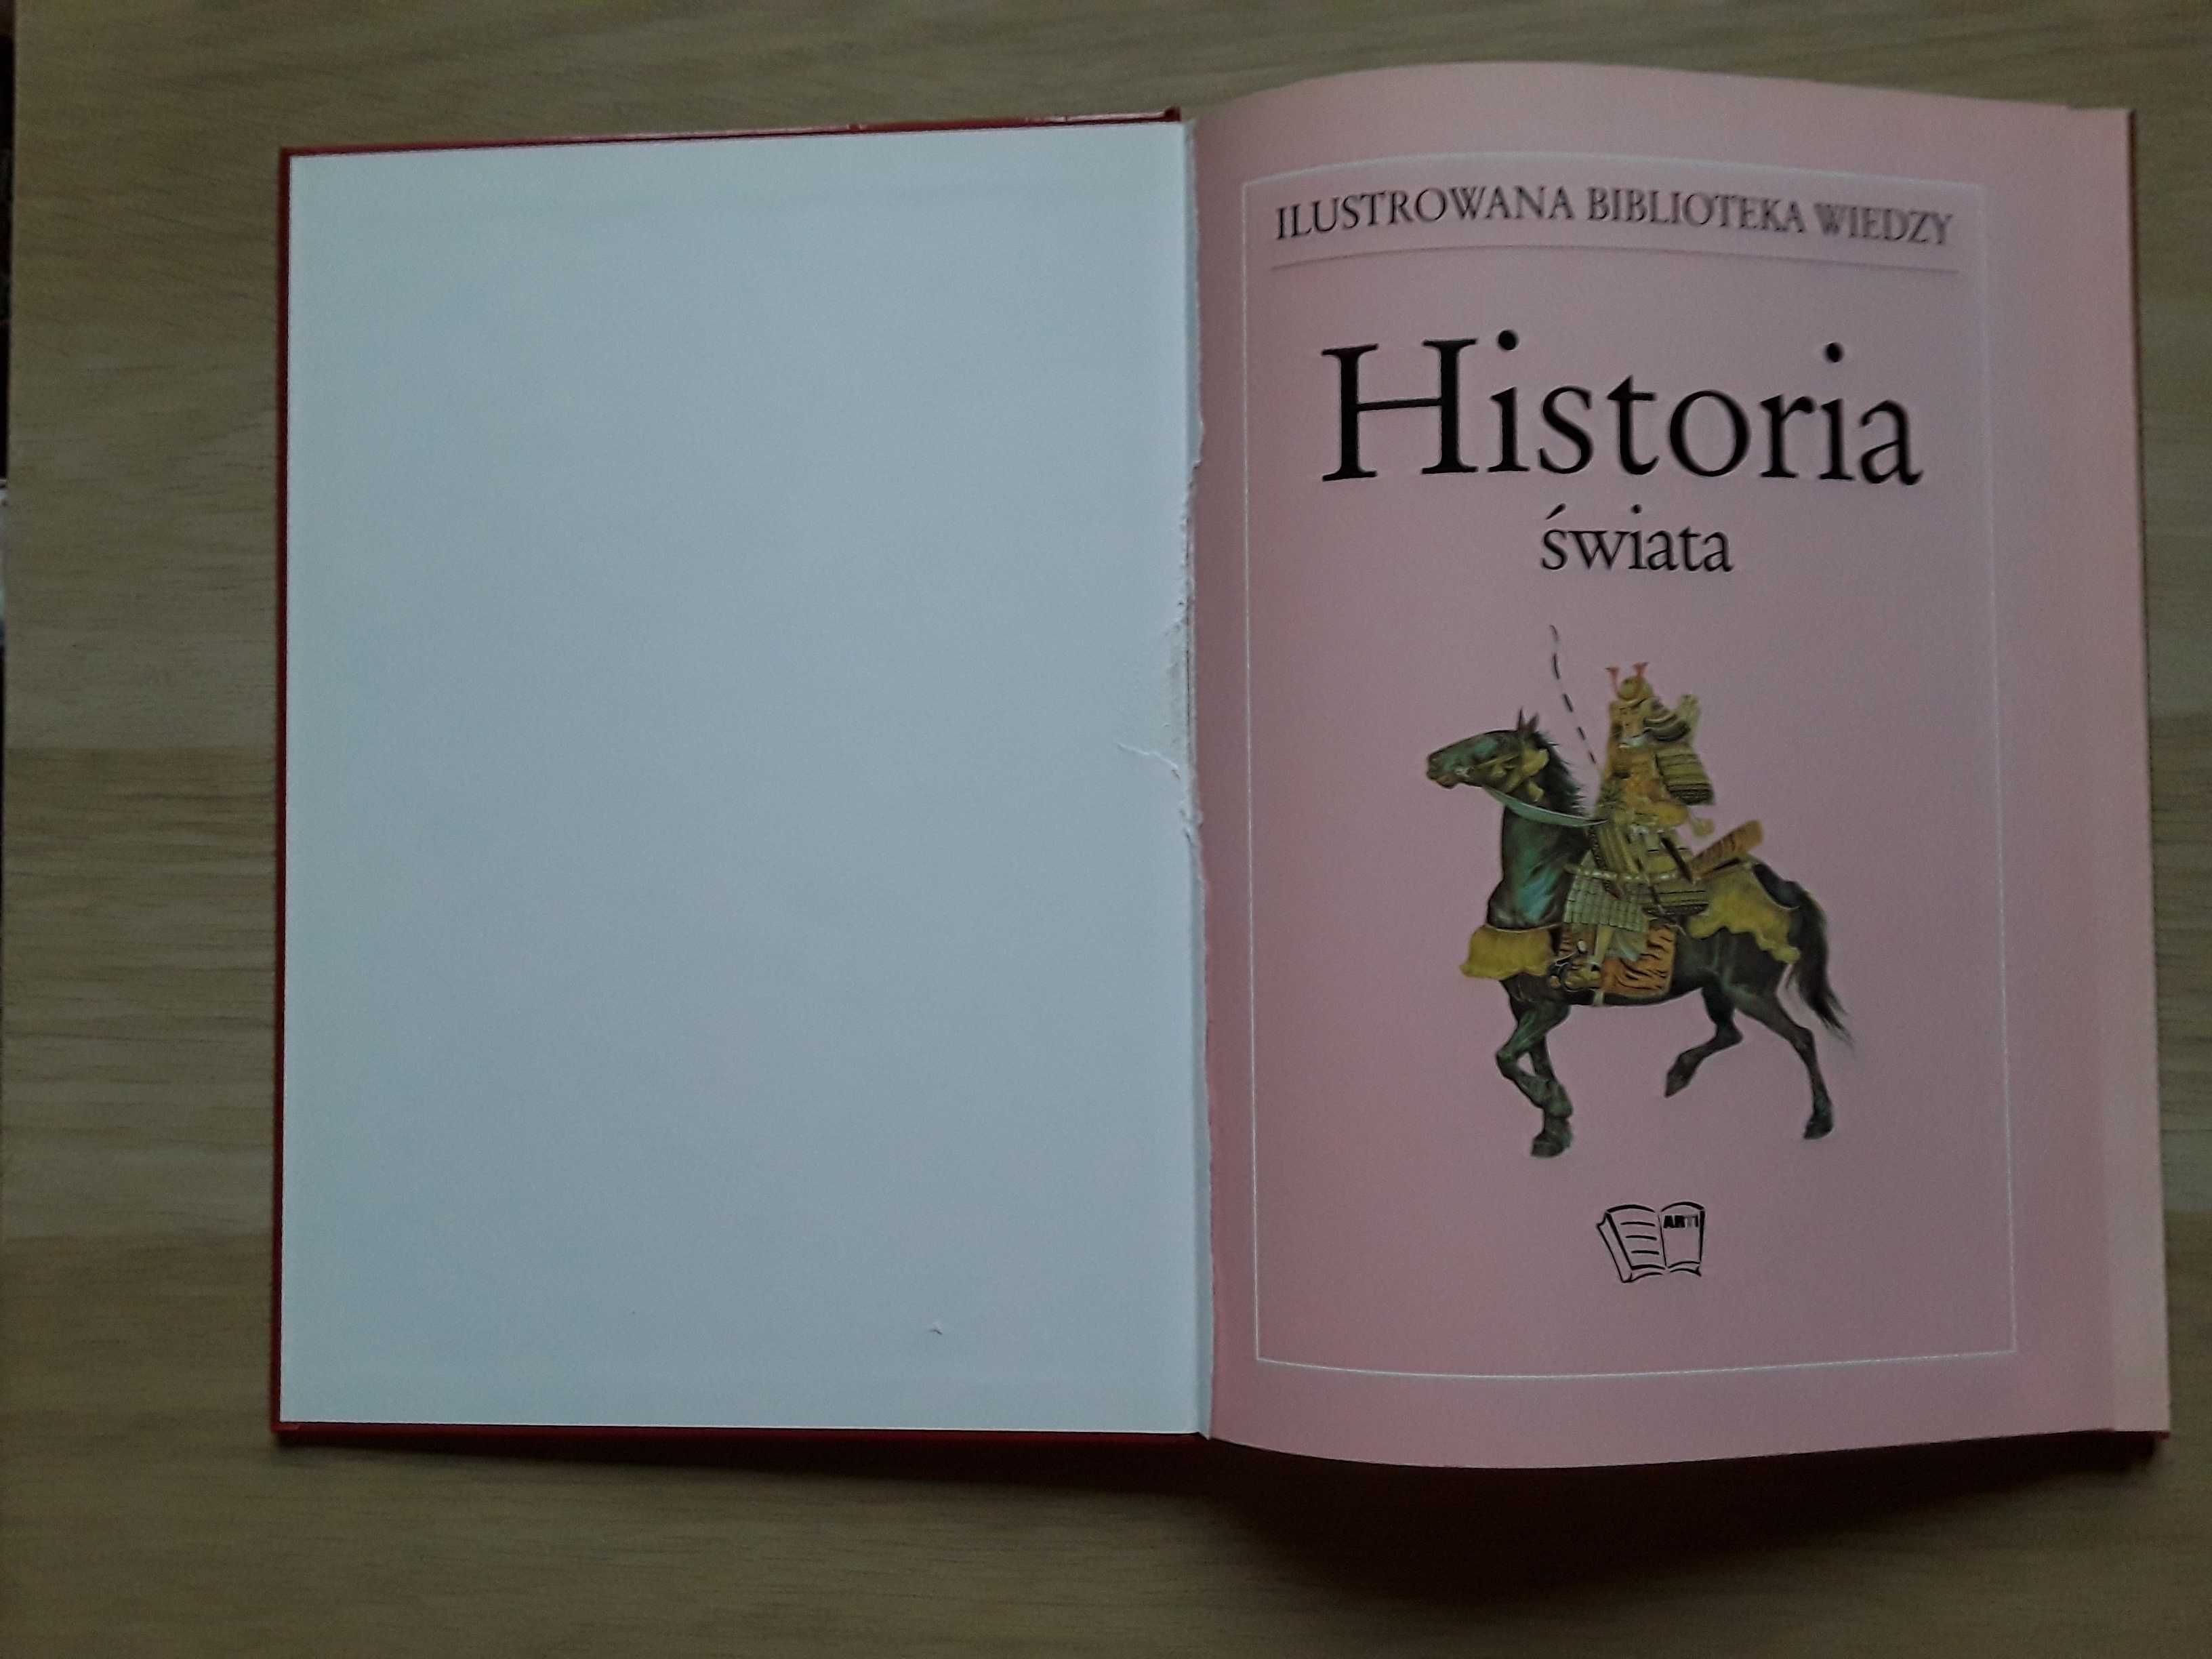 Historia świata Ilustrowana biblioteka wiedzy